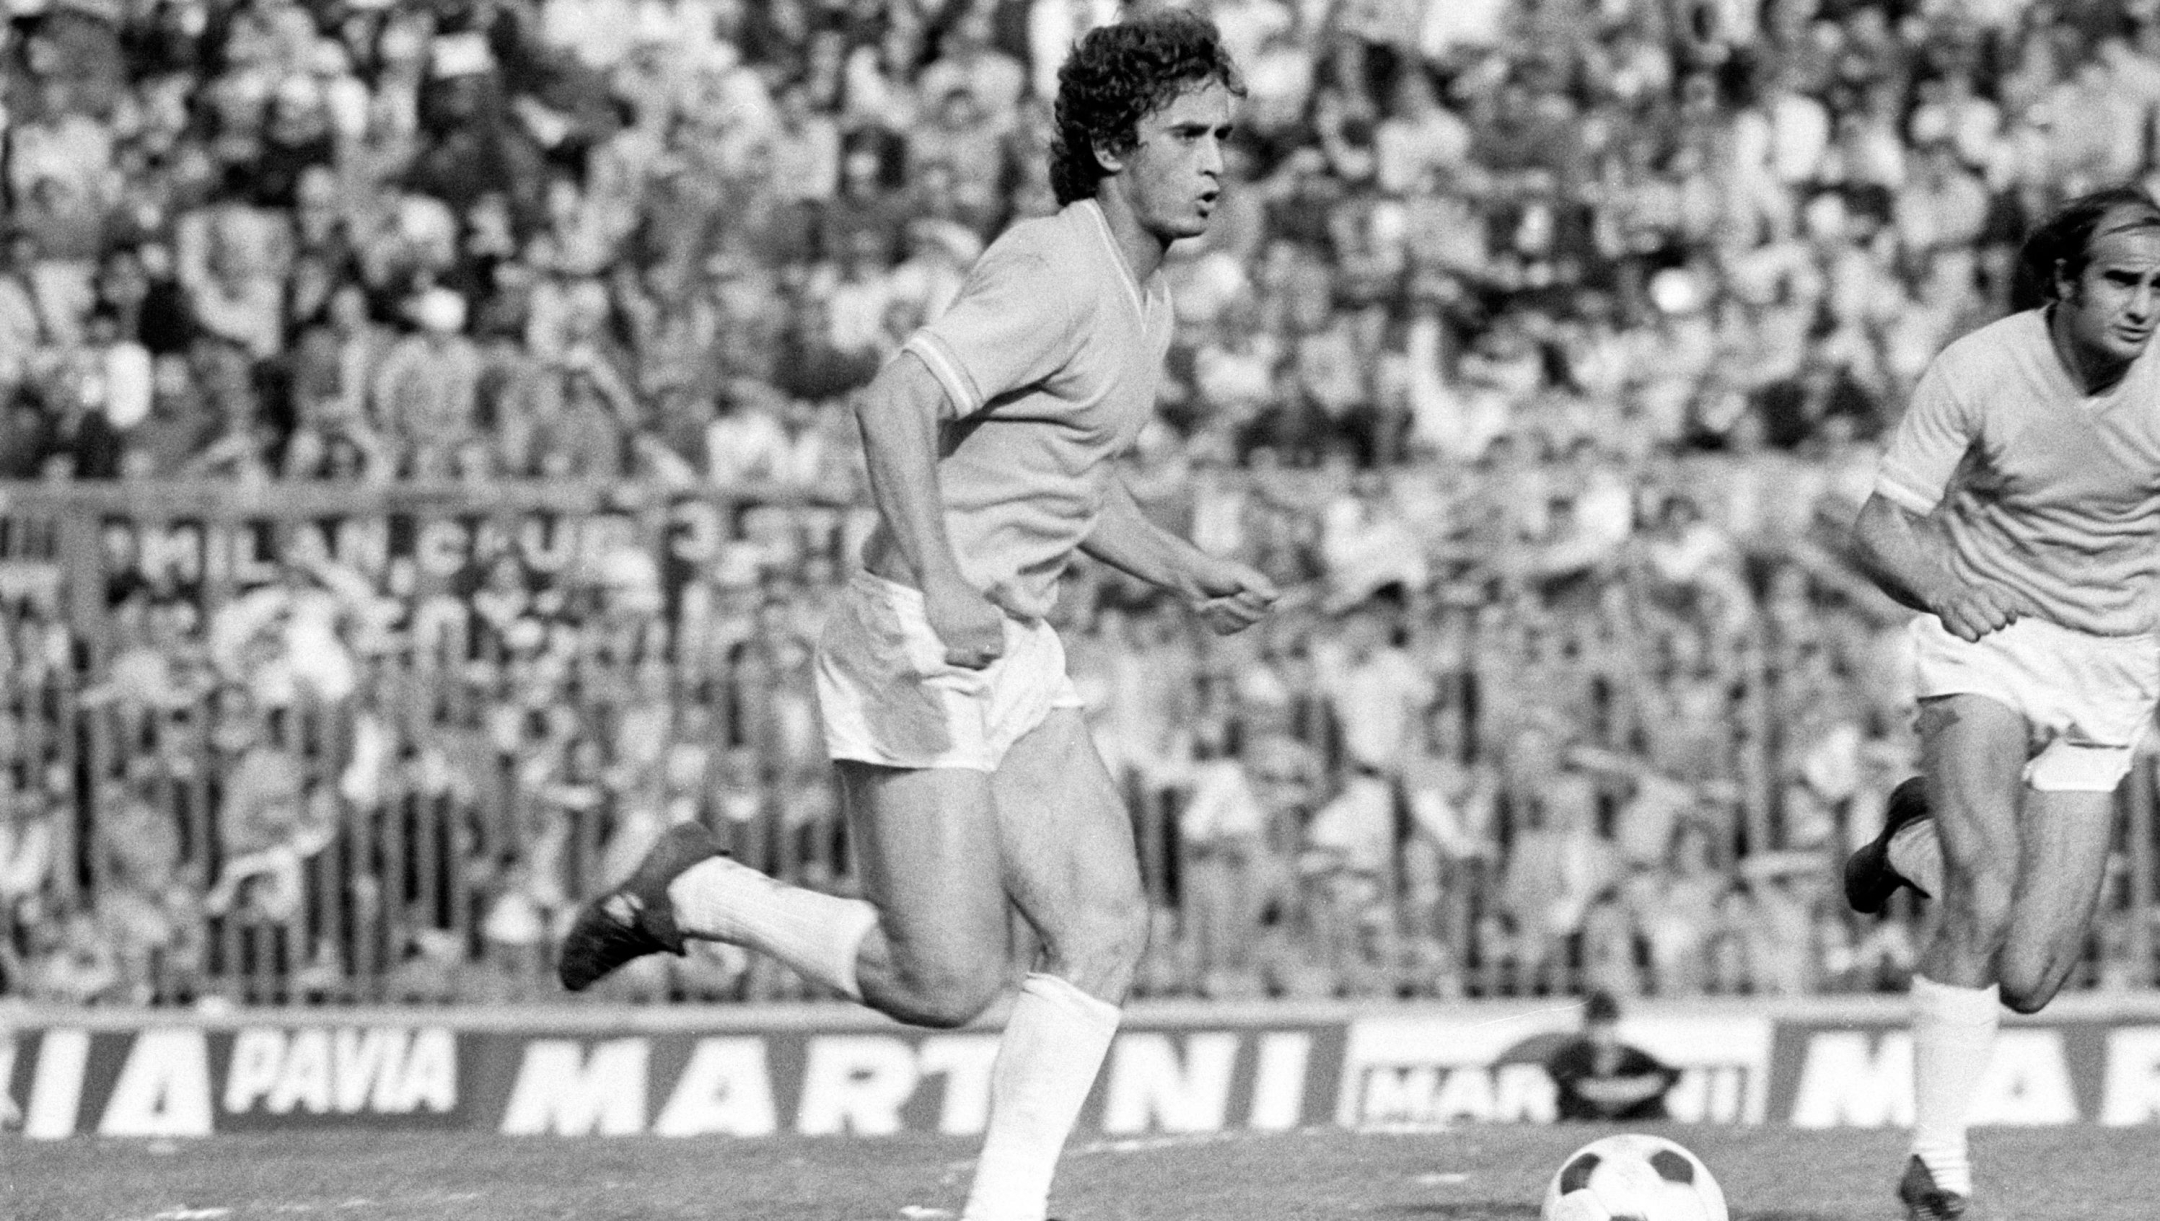 ©Lapresse
archivio storico
anno 1974
sport
Calcio
Vincenzo D'Amico
Nella foto : il calciatore della Lazio Vincenzo D'Amico in azione
N 02555